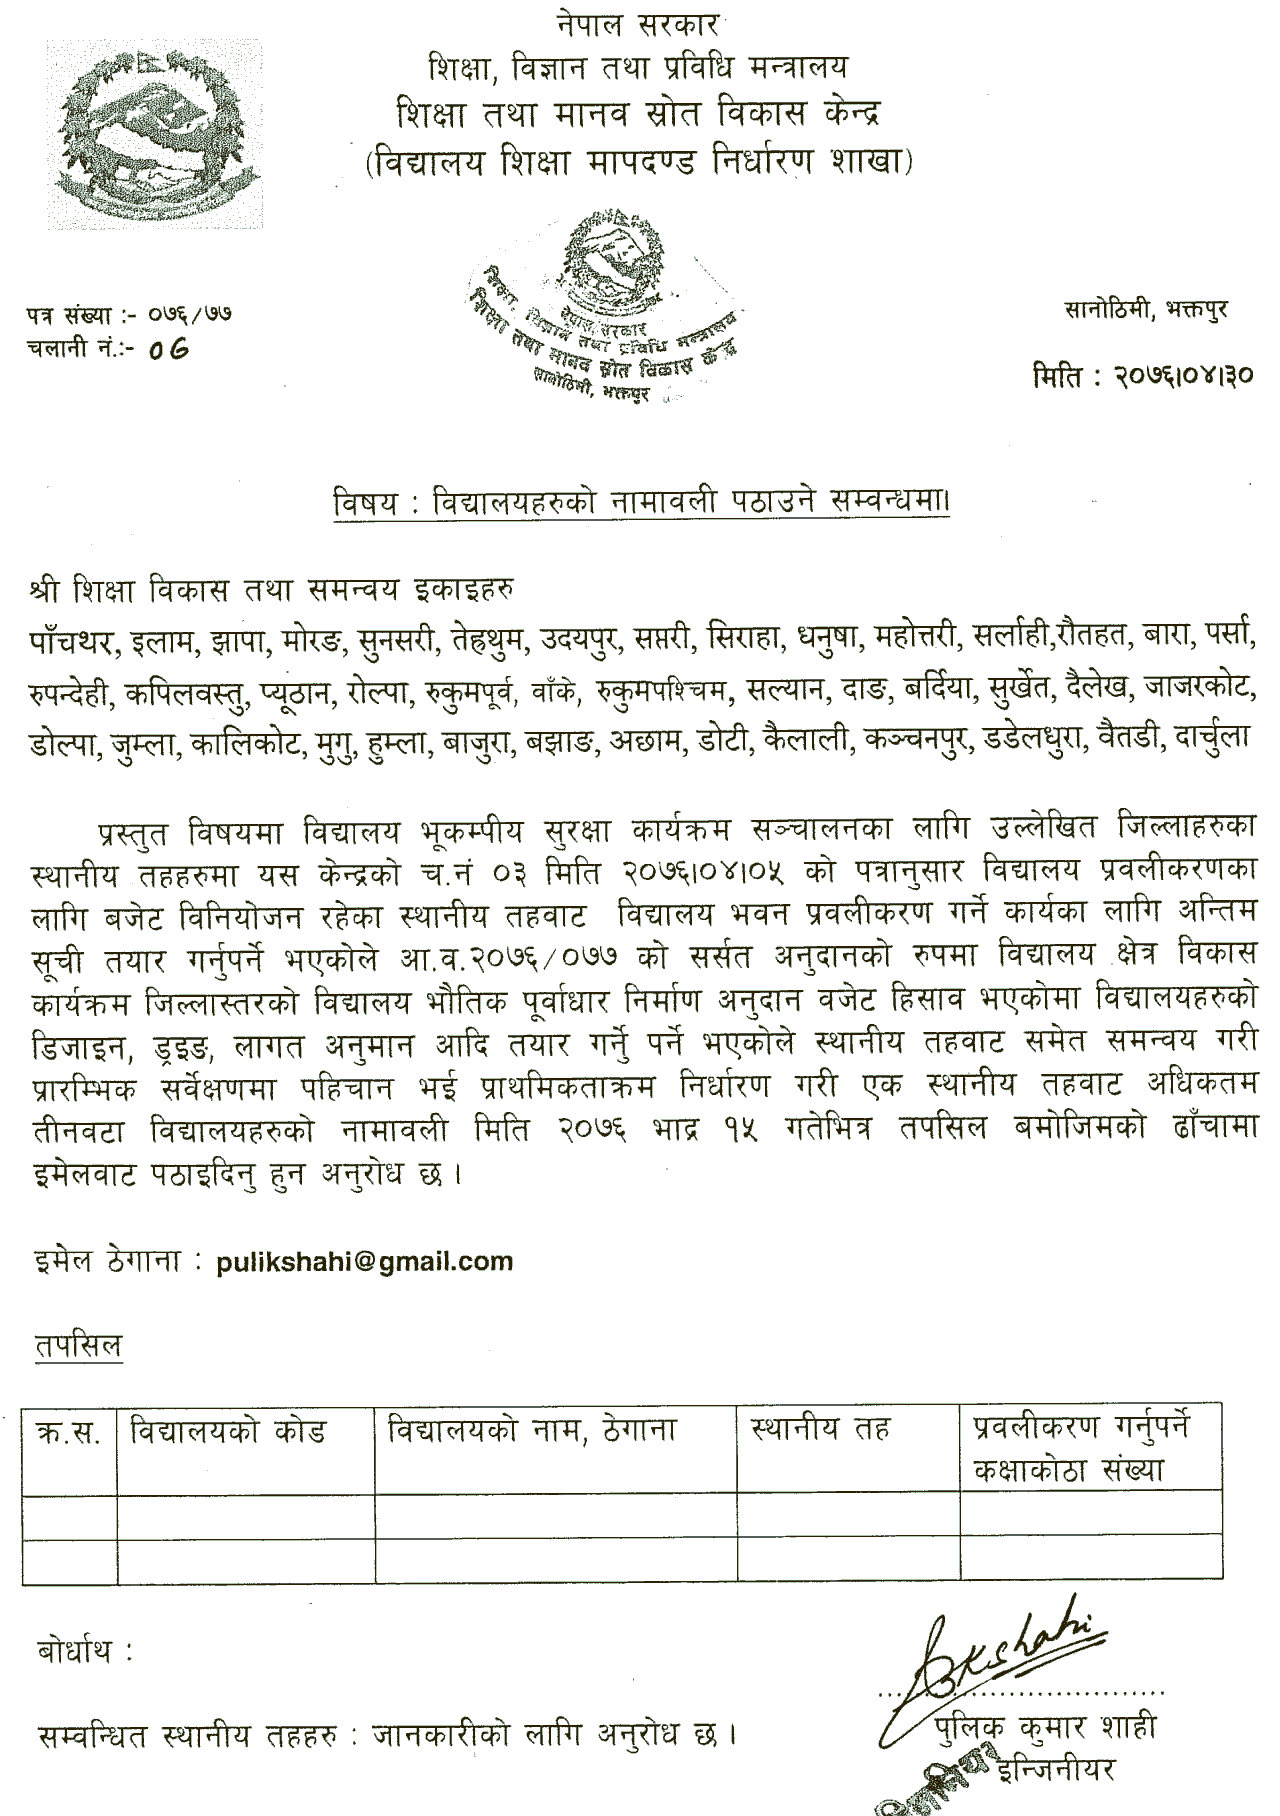 Ministry of Education Notice Regarding sending school enrollment